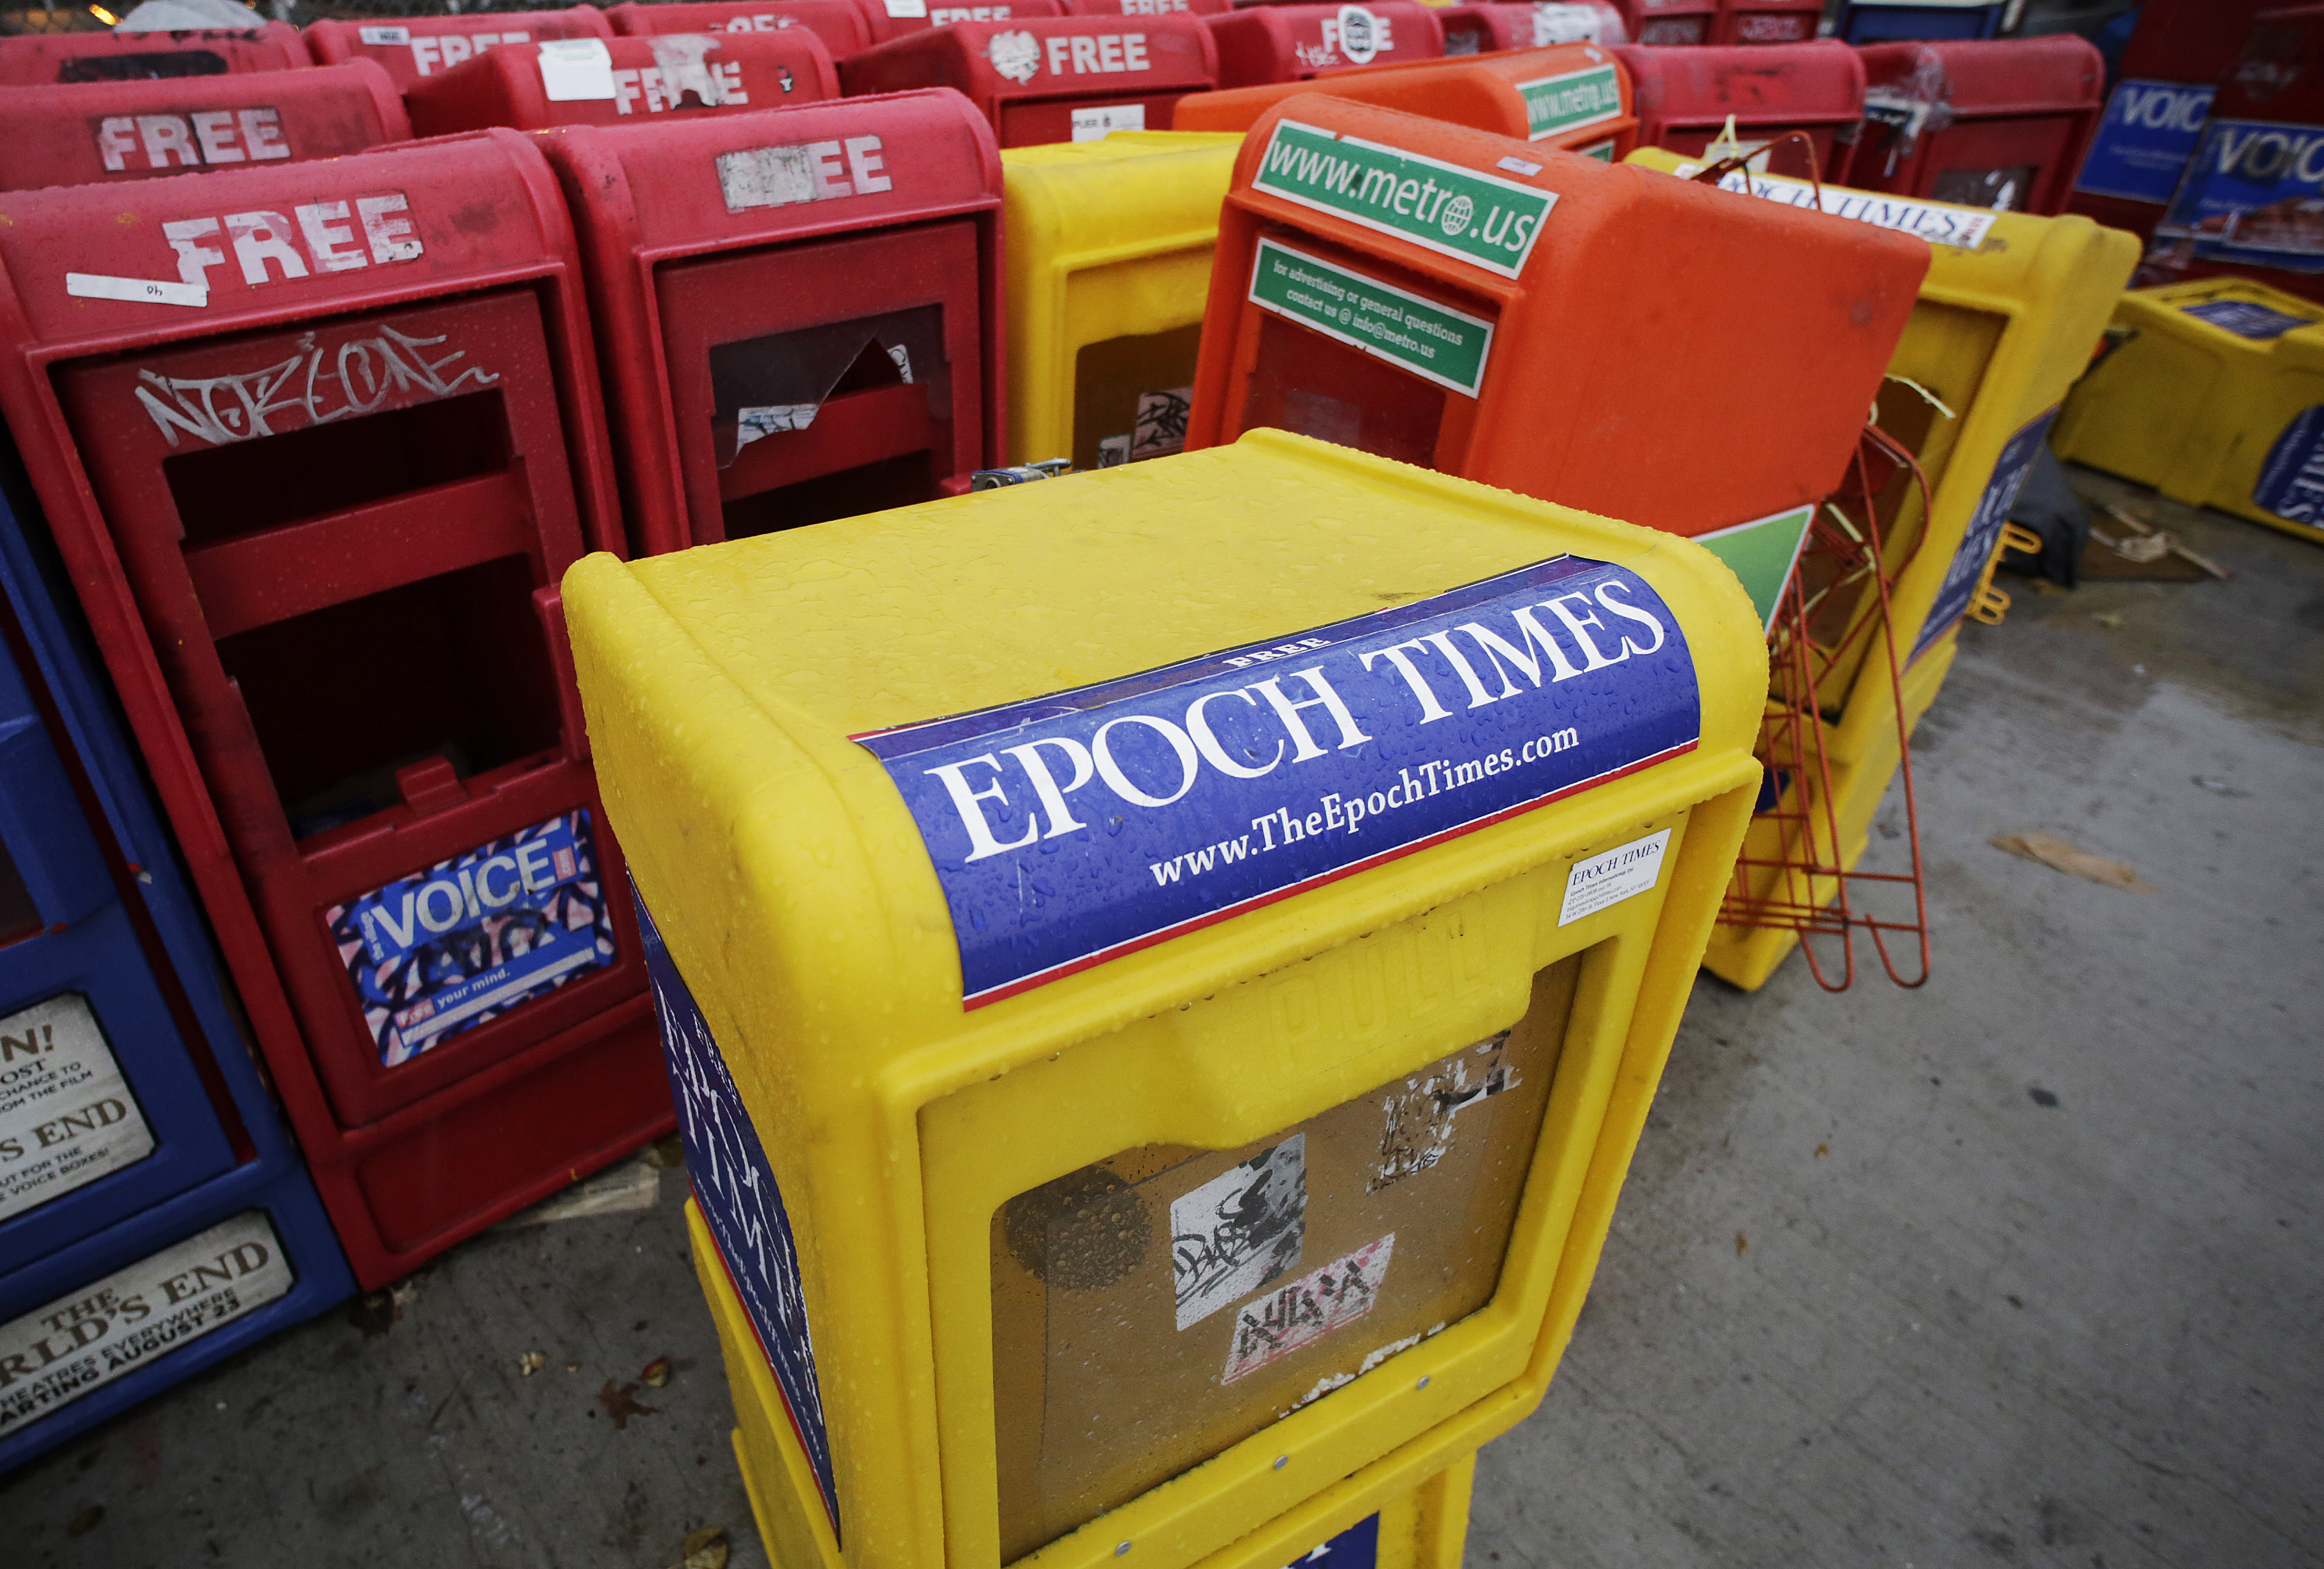 An Epoch Times news rack.